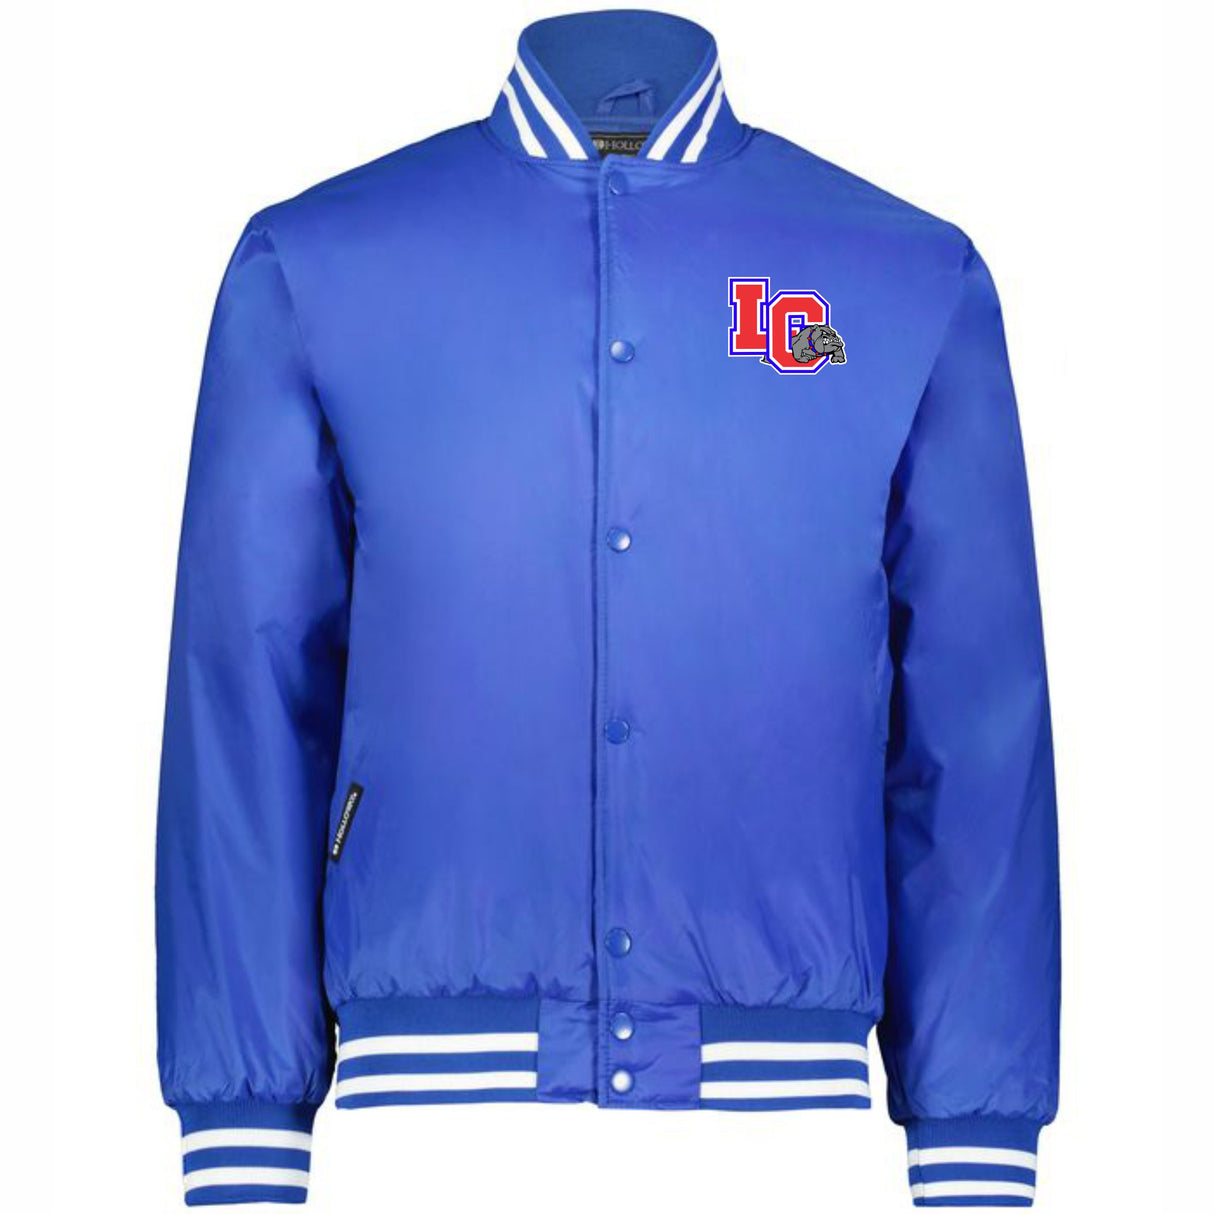 LCHS Baseball Heritage Jacket